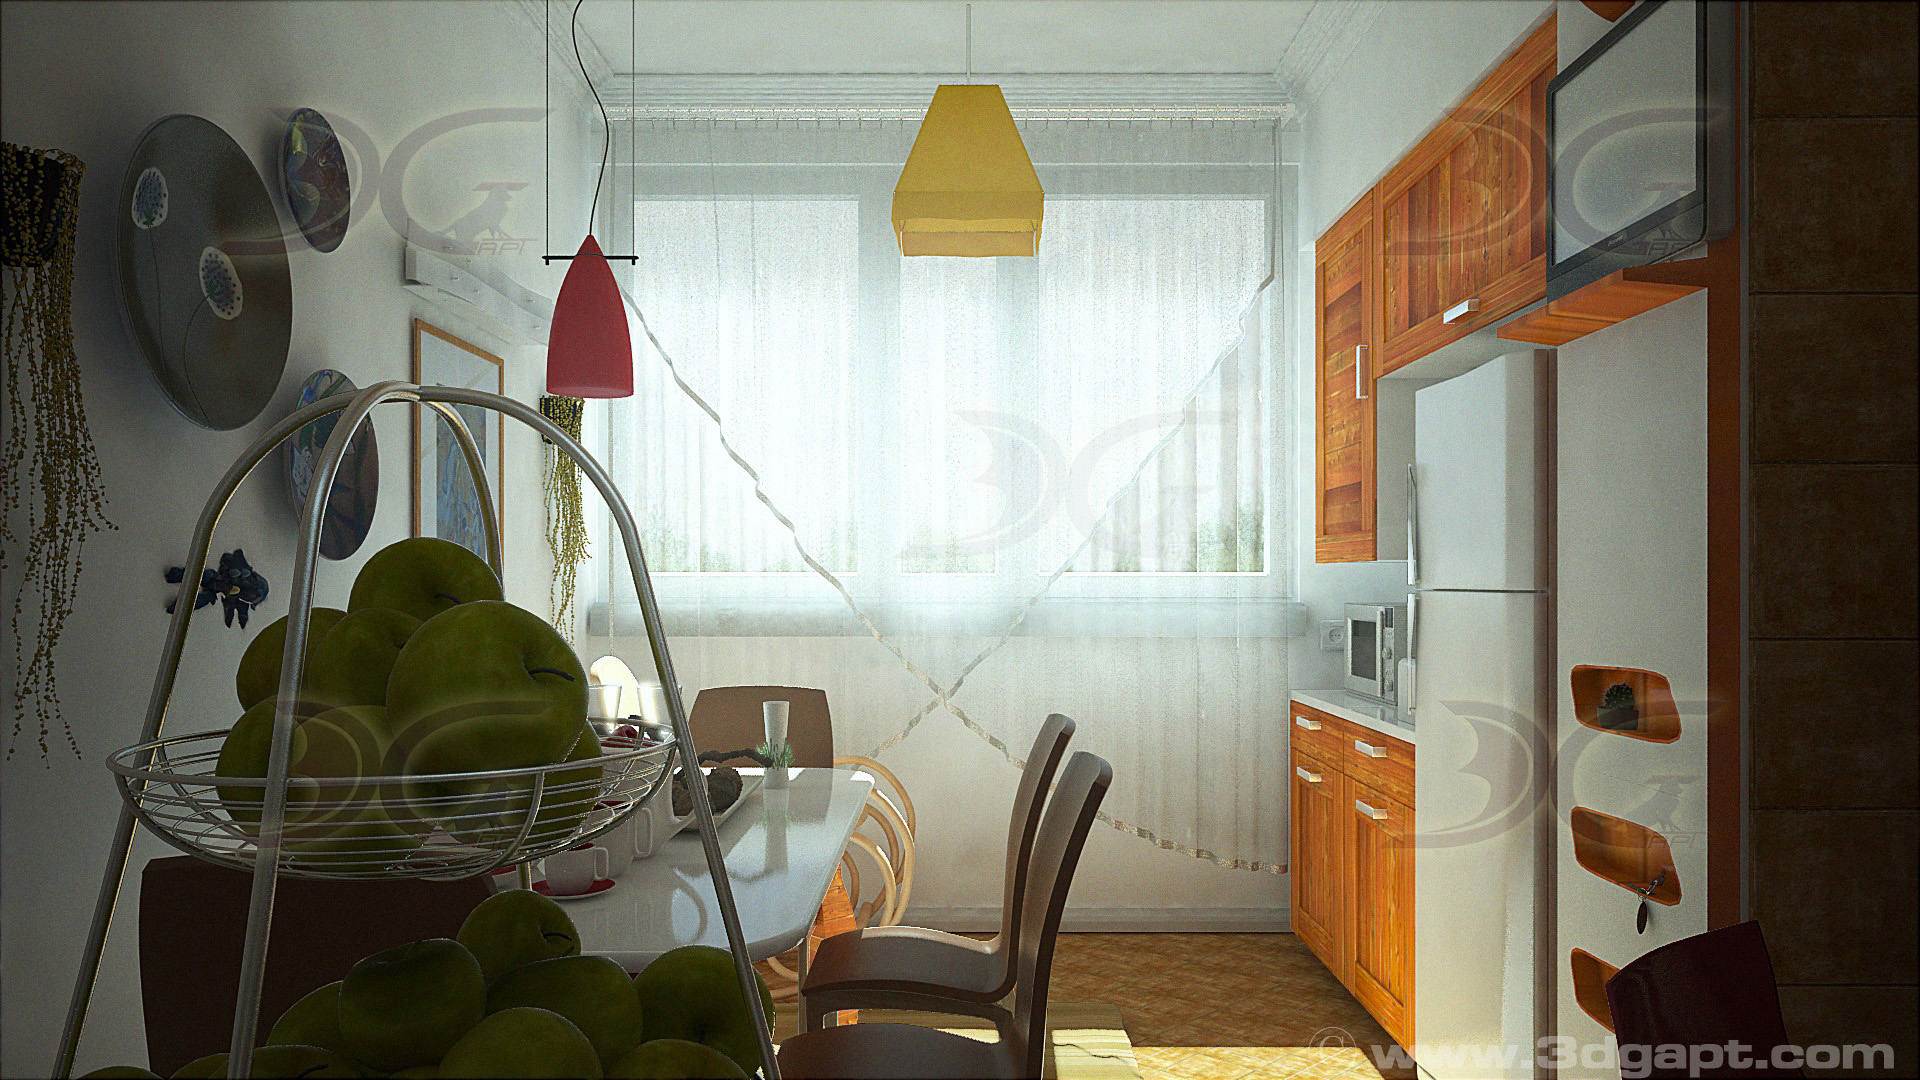 architecture interior kitchen-3versions 15